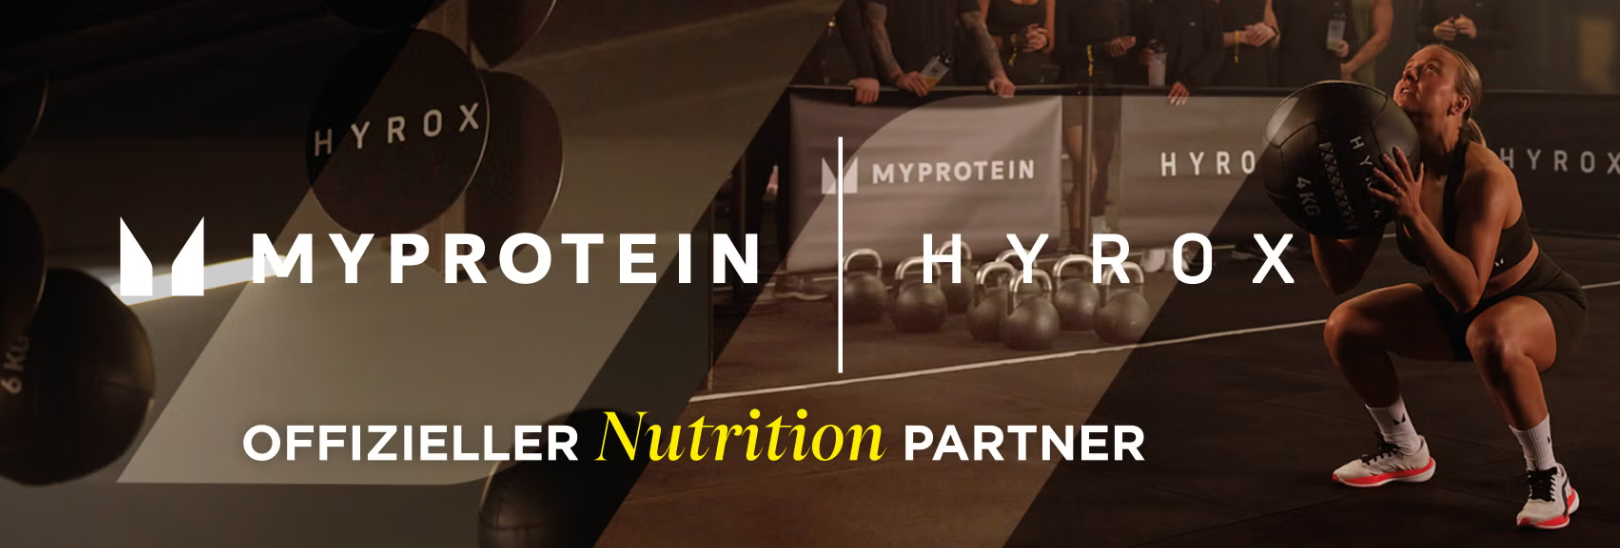 Motivieren Sie sich mit Myprotein Produkten